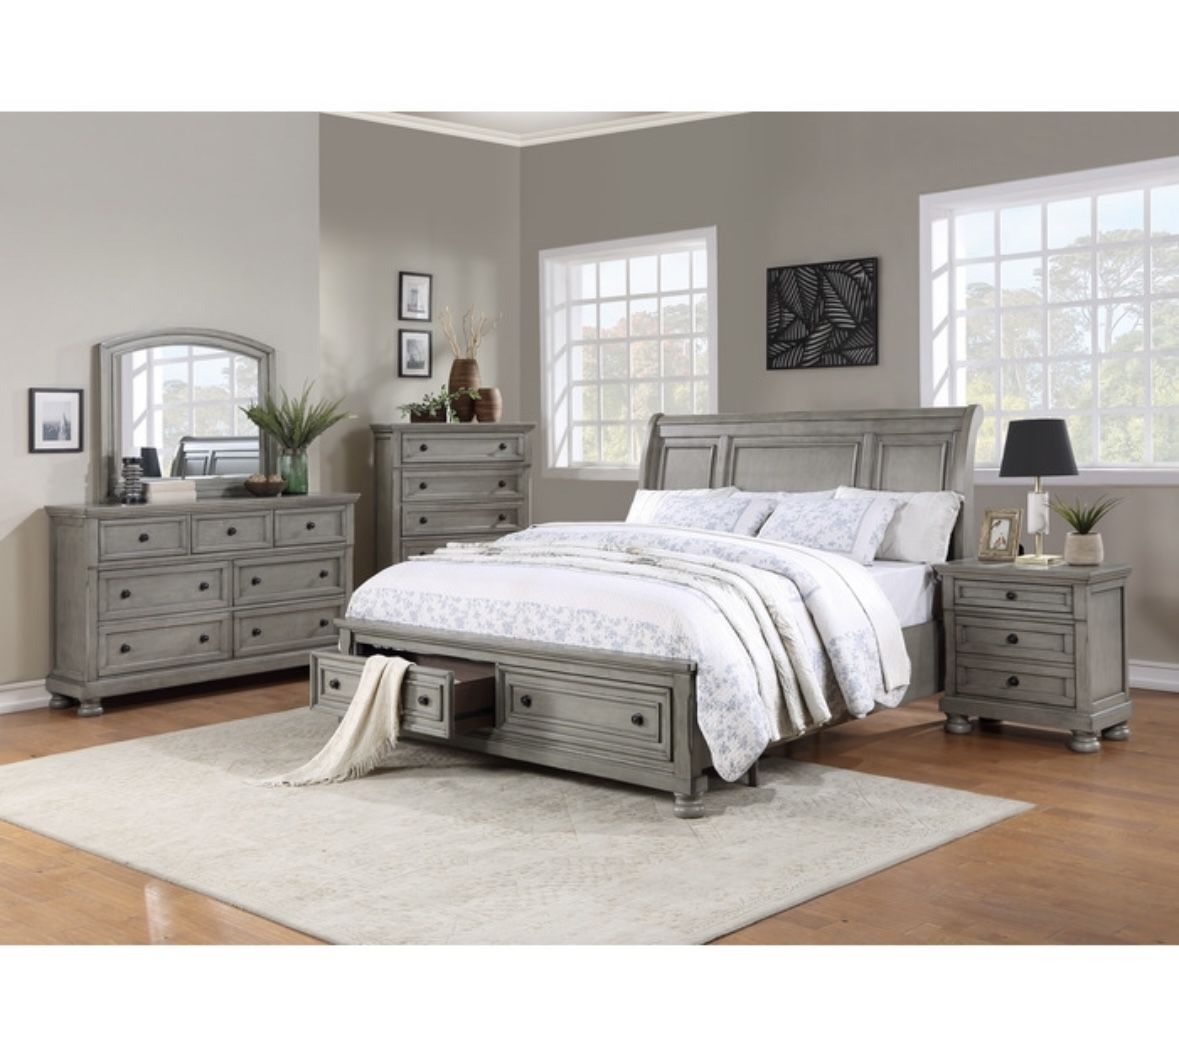 Bedroom Furniture, Bed, Furniture, Bedroom Set, Dresser, Mirror, Nightstand, Wooden Bedroom Sets, Grey Bed, Brown Bed